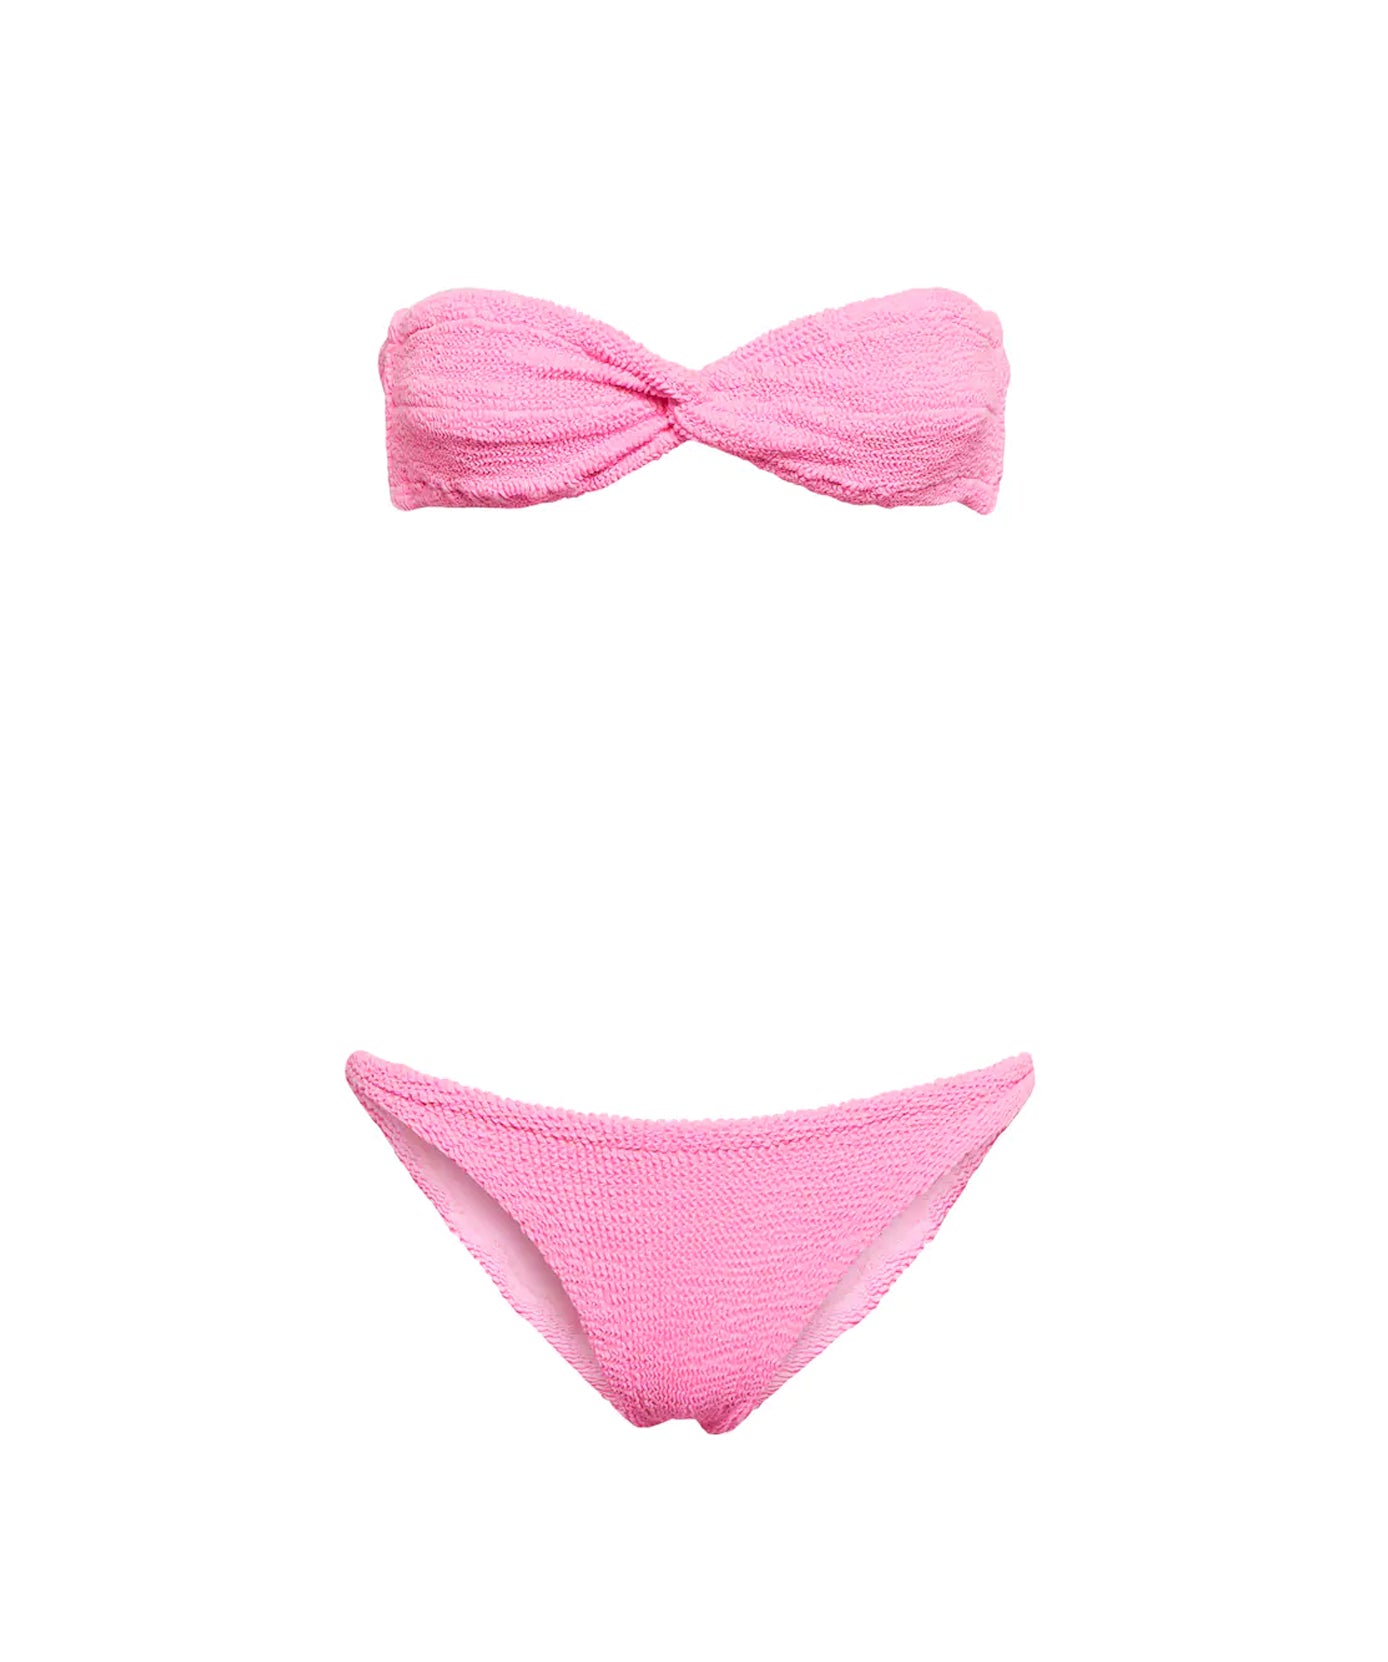 HUNZA G Jean Bikini in Bubblegum Pink at Violet x Grace Miami